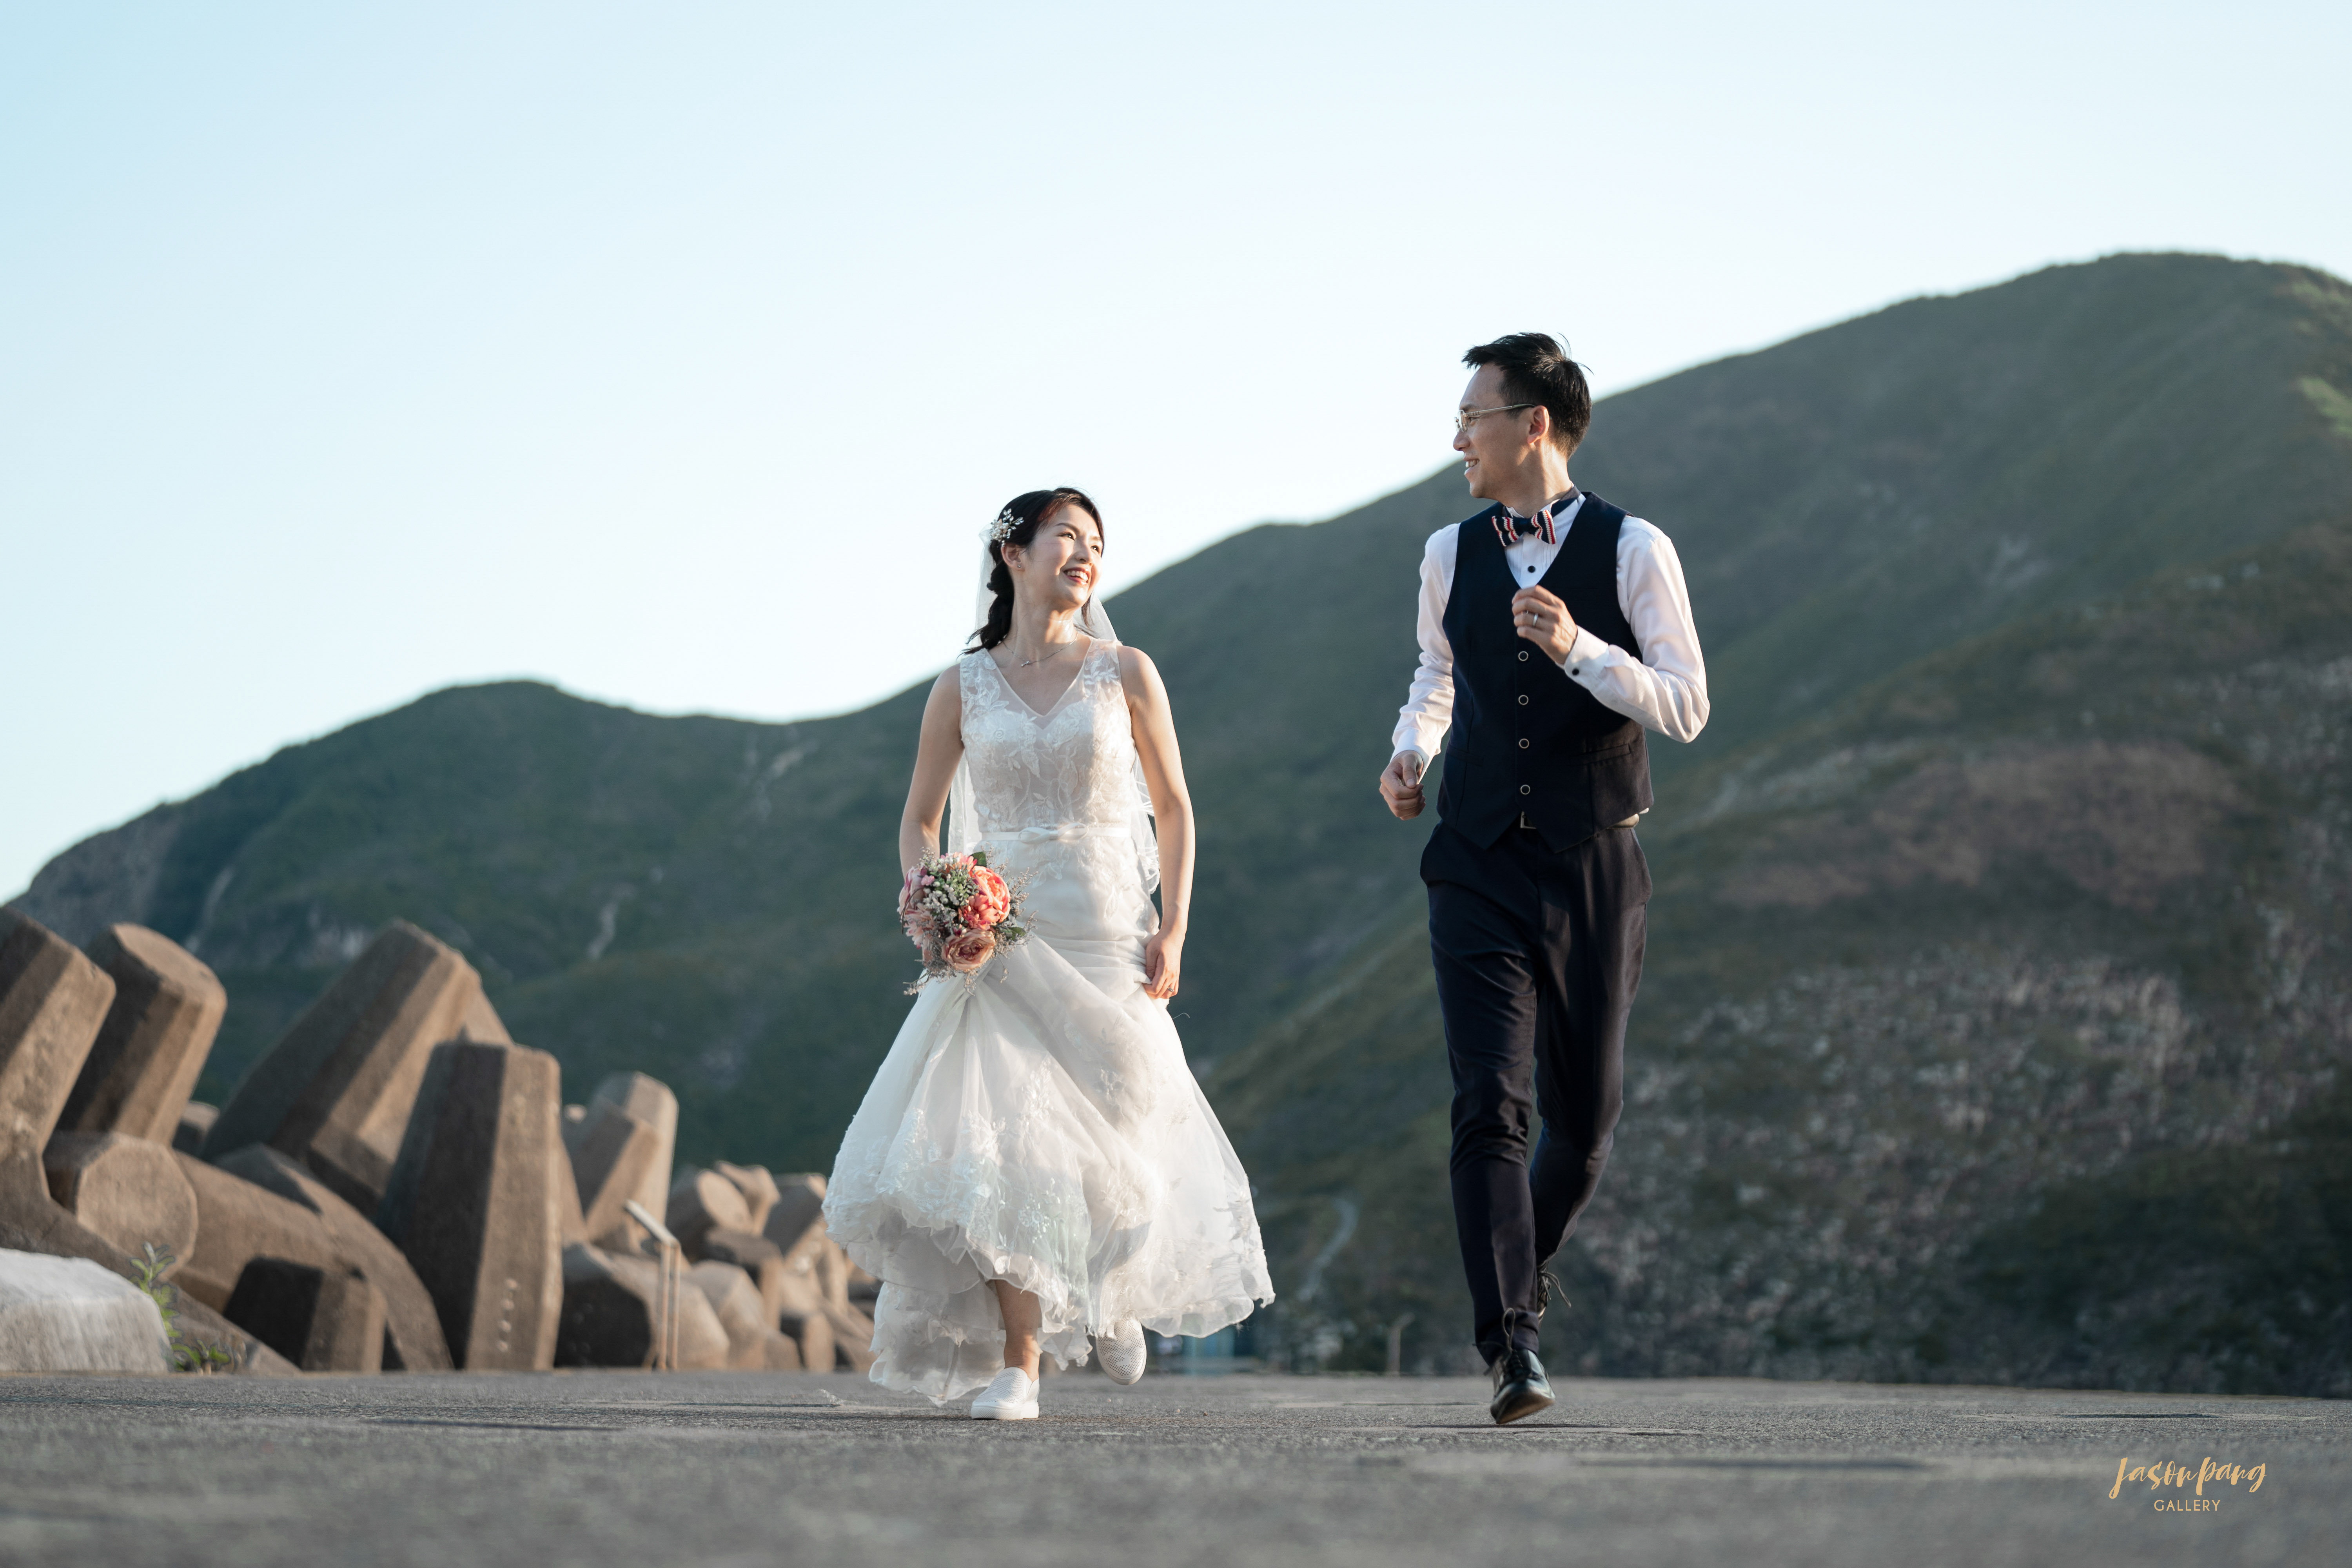 【星級婚享】5 Tips揀個好Pre-wedding攝影師 ｜專業攝影師Jason Pang 